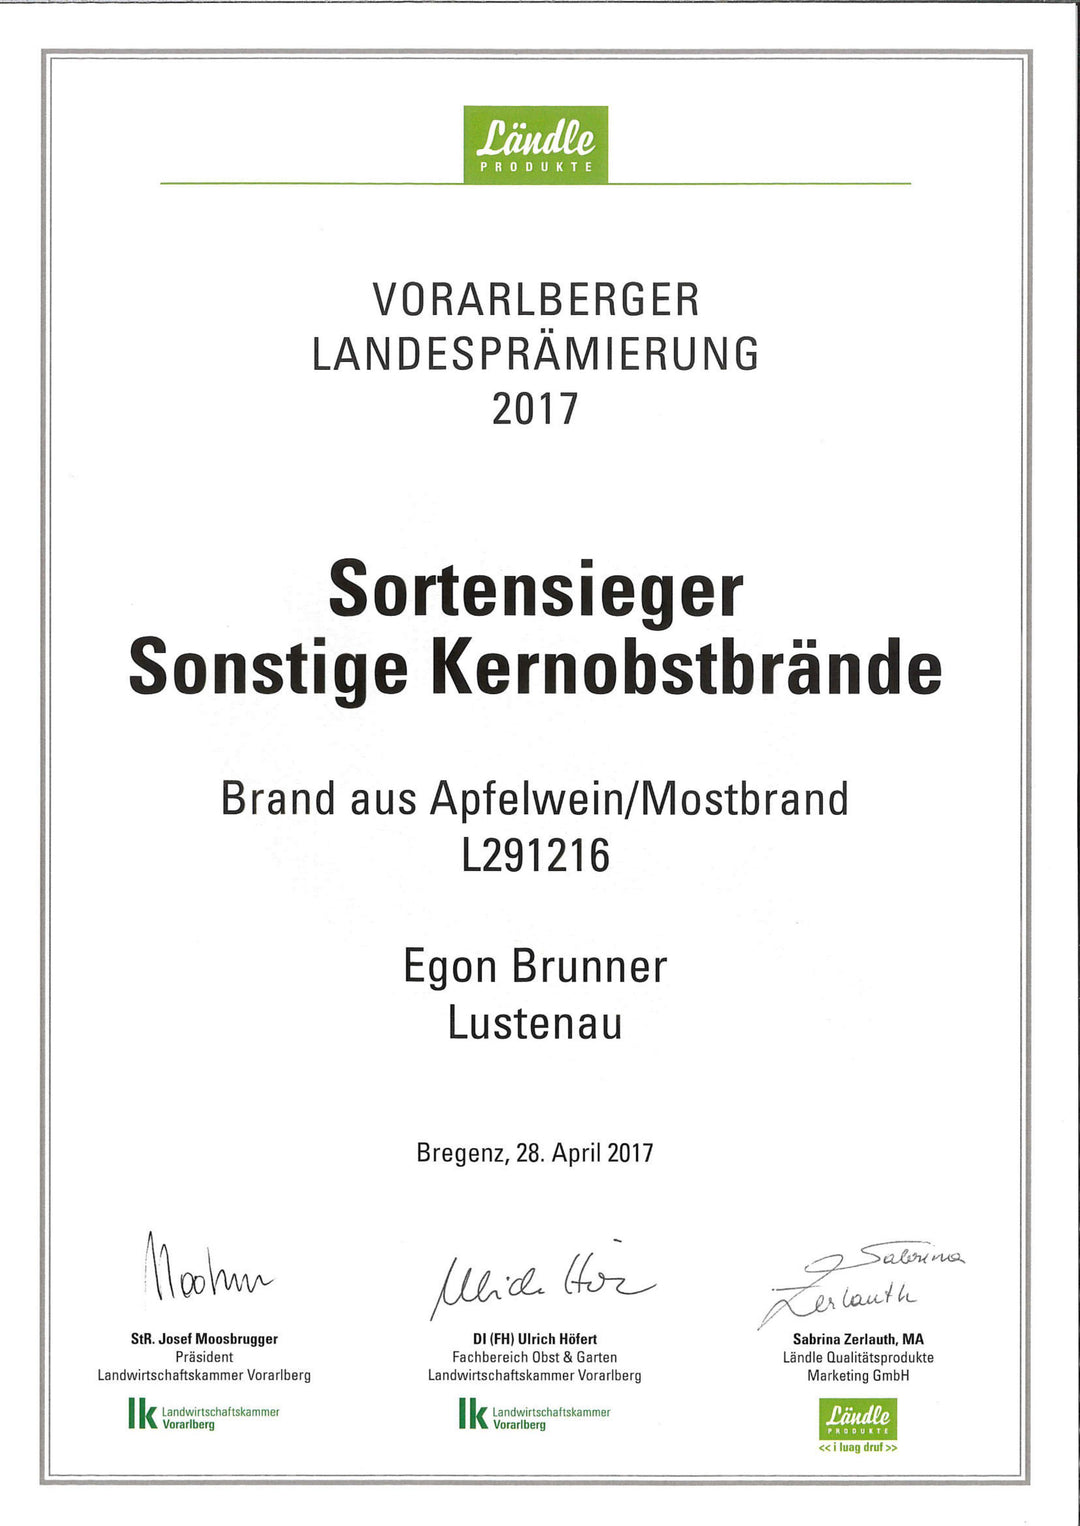 Vorarlberger Landesprämierung 2017 Urkunde Sortensieger Kernobstbrände für den Moschtbrand der Destillerie Brunner.